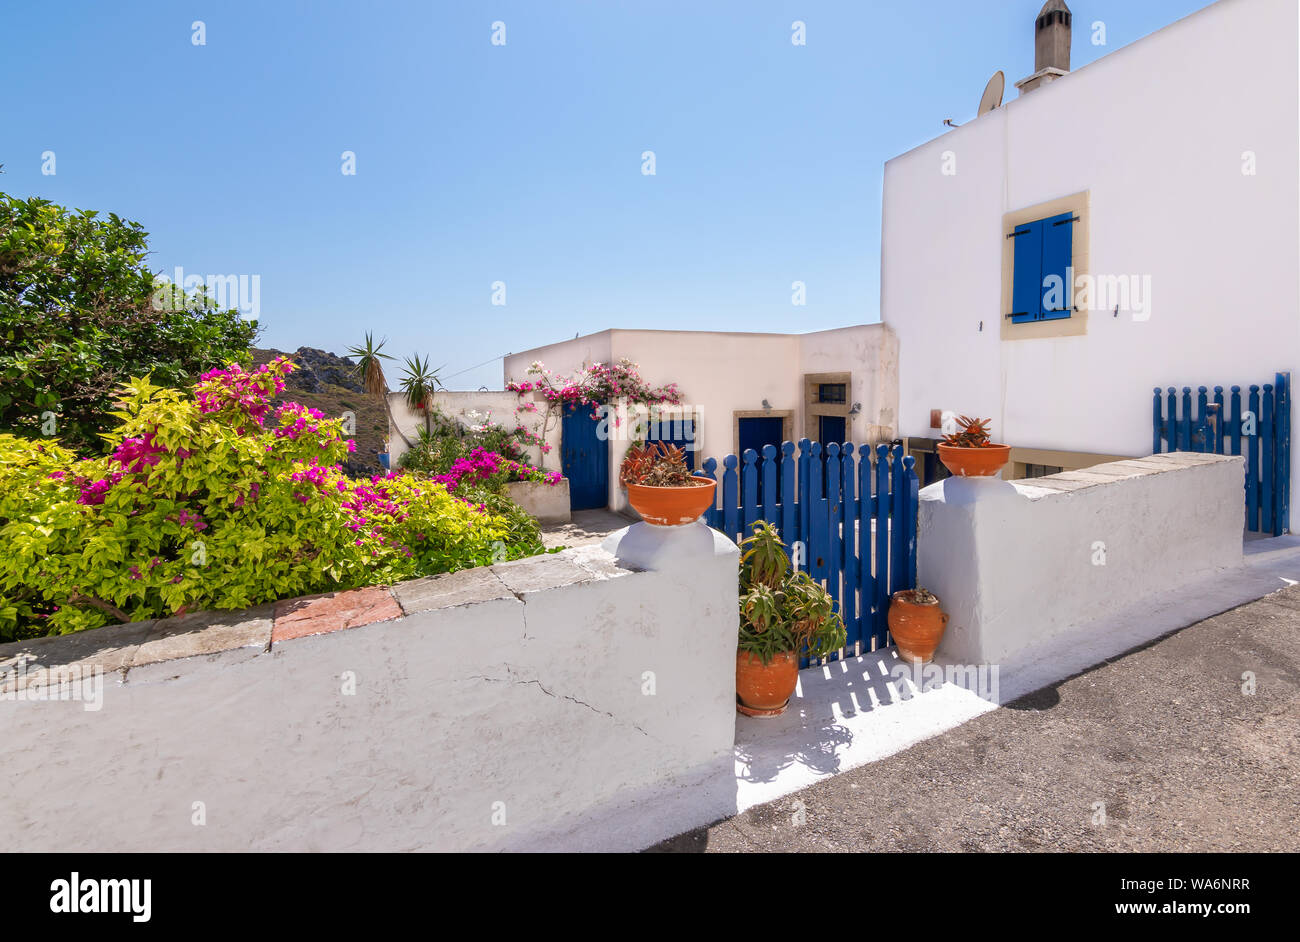 La città di Chora con Greco bianco house, cortile e ceramiche decorative lungo la strada, Kythira Island, Grecia. Foto Stock